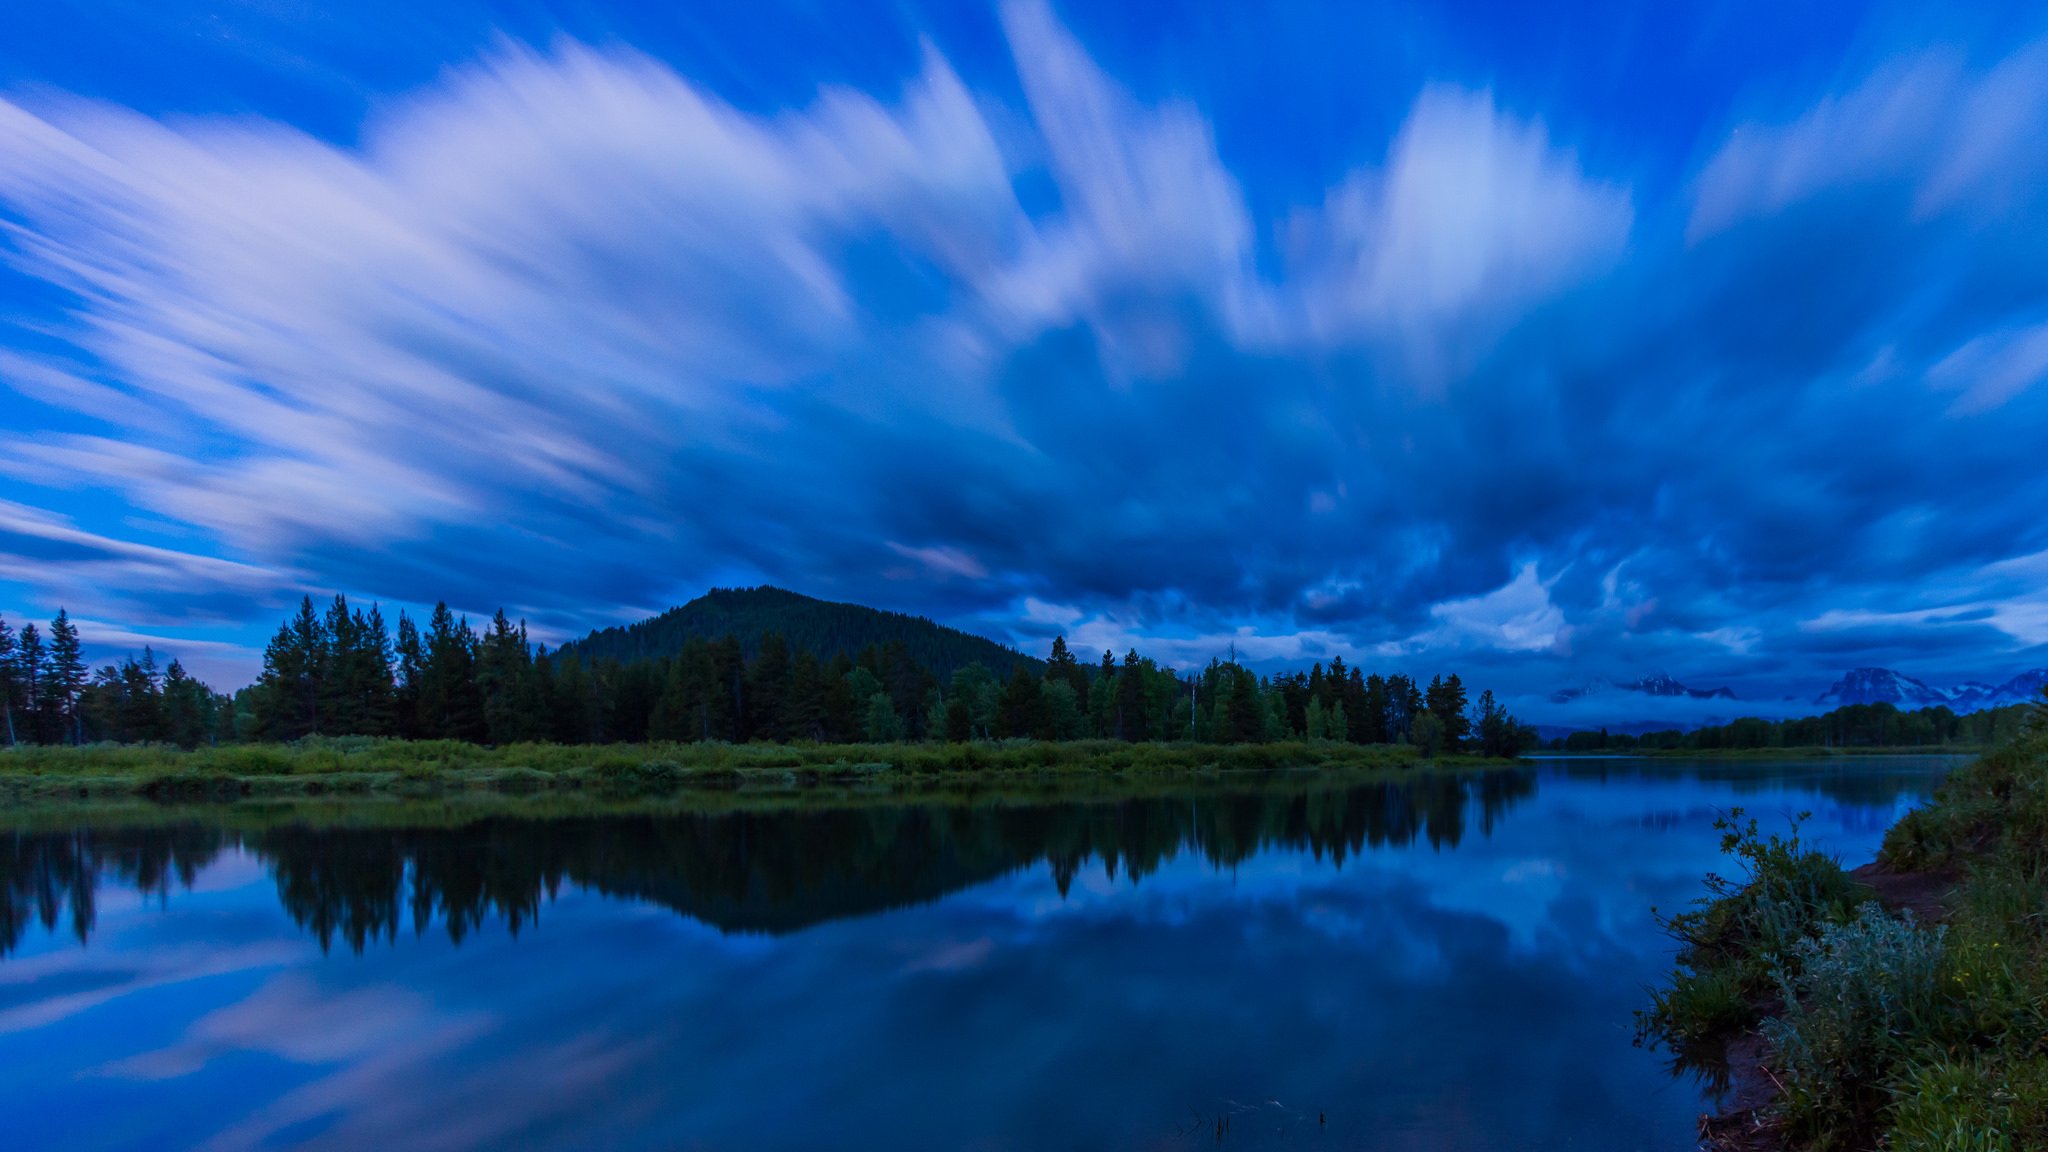 сша гранд-титон национальный парк гранд tetons река вода гладь отражение берег деревья лес синее небо облака природа утро перед рассветом